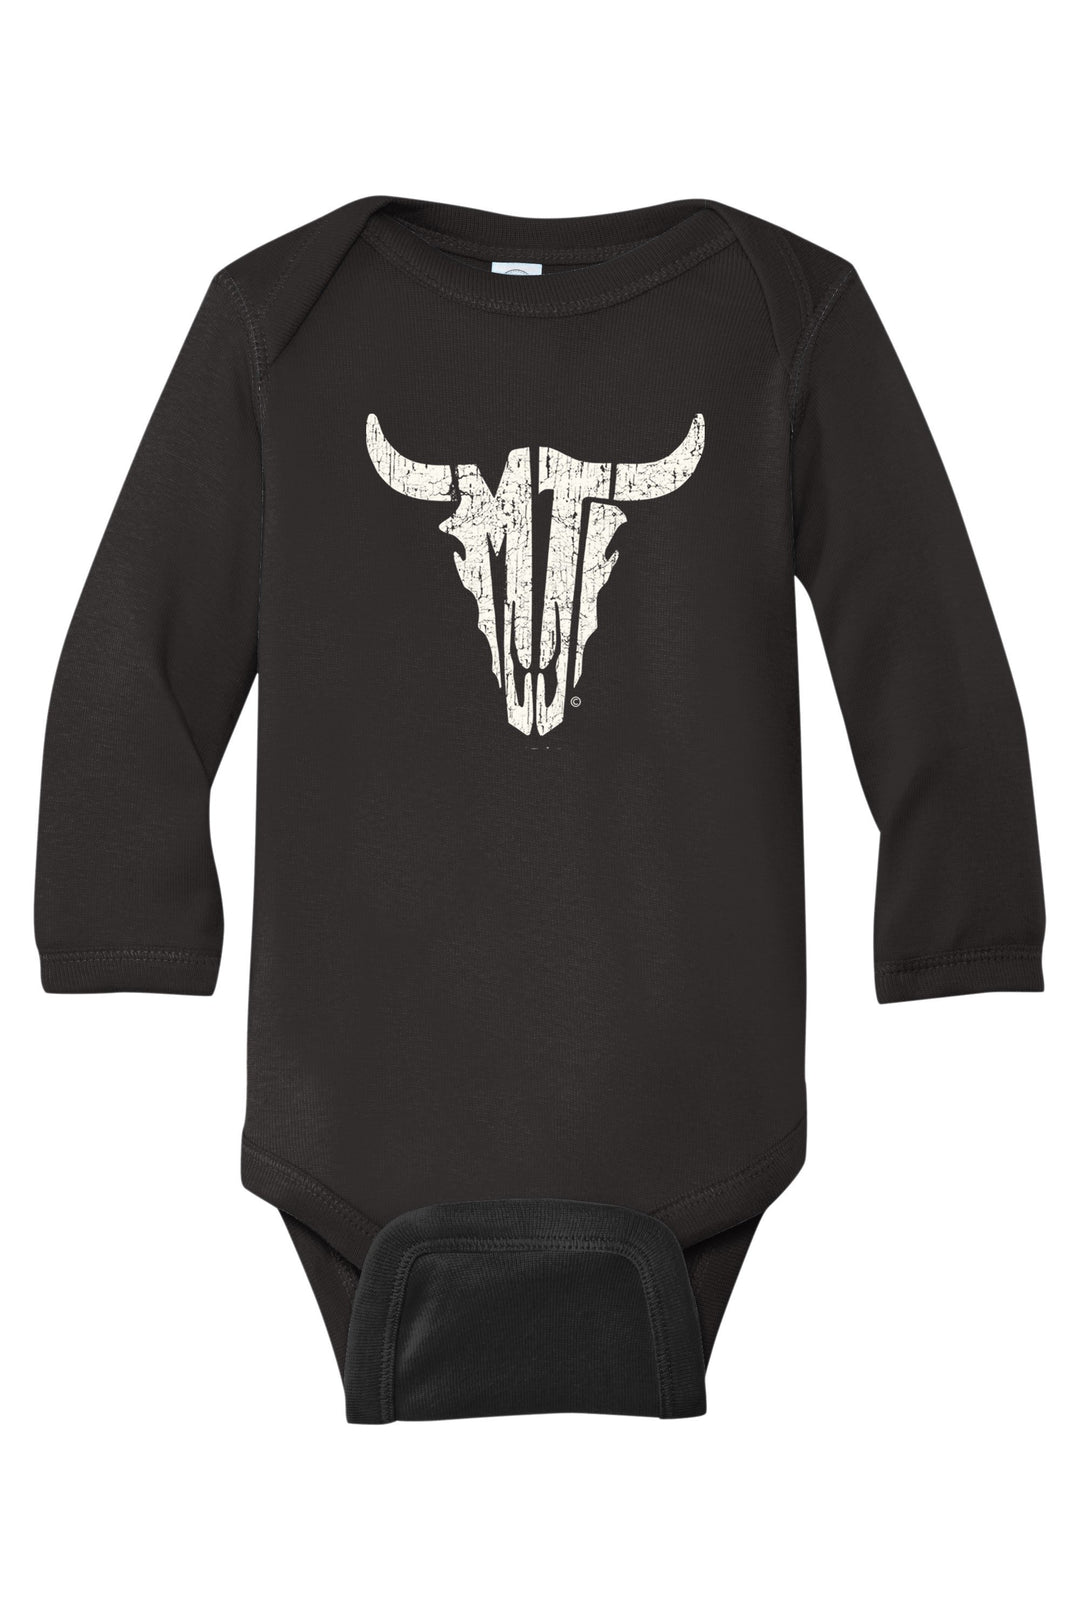 Black MT Steer Skull Long Sleeve Infant Bodysuit